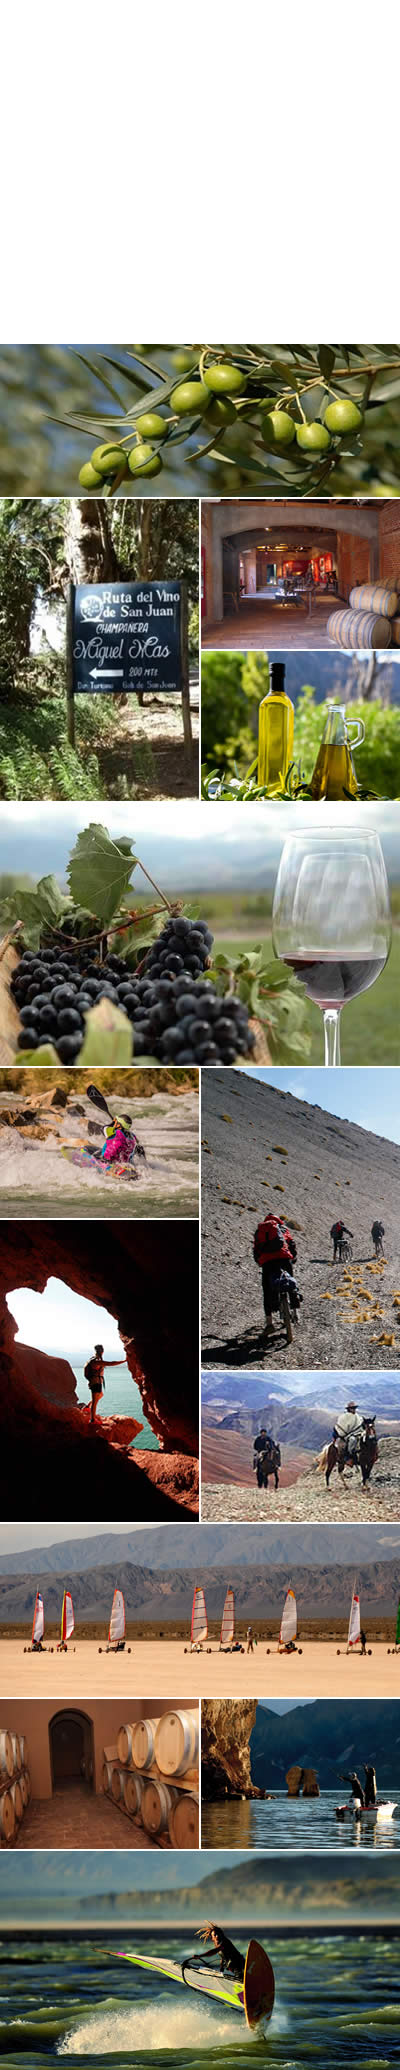 En la provincia de San Juan hay rutas turísticas del vino, y del olivo ademas en San Juan hay actividades que estimulan todos los sentidos y que son ideales para los fanáticos del deportes y las aventuras.